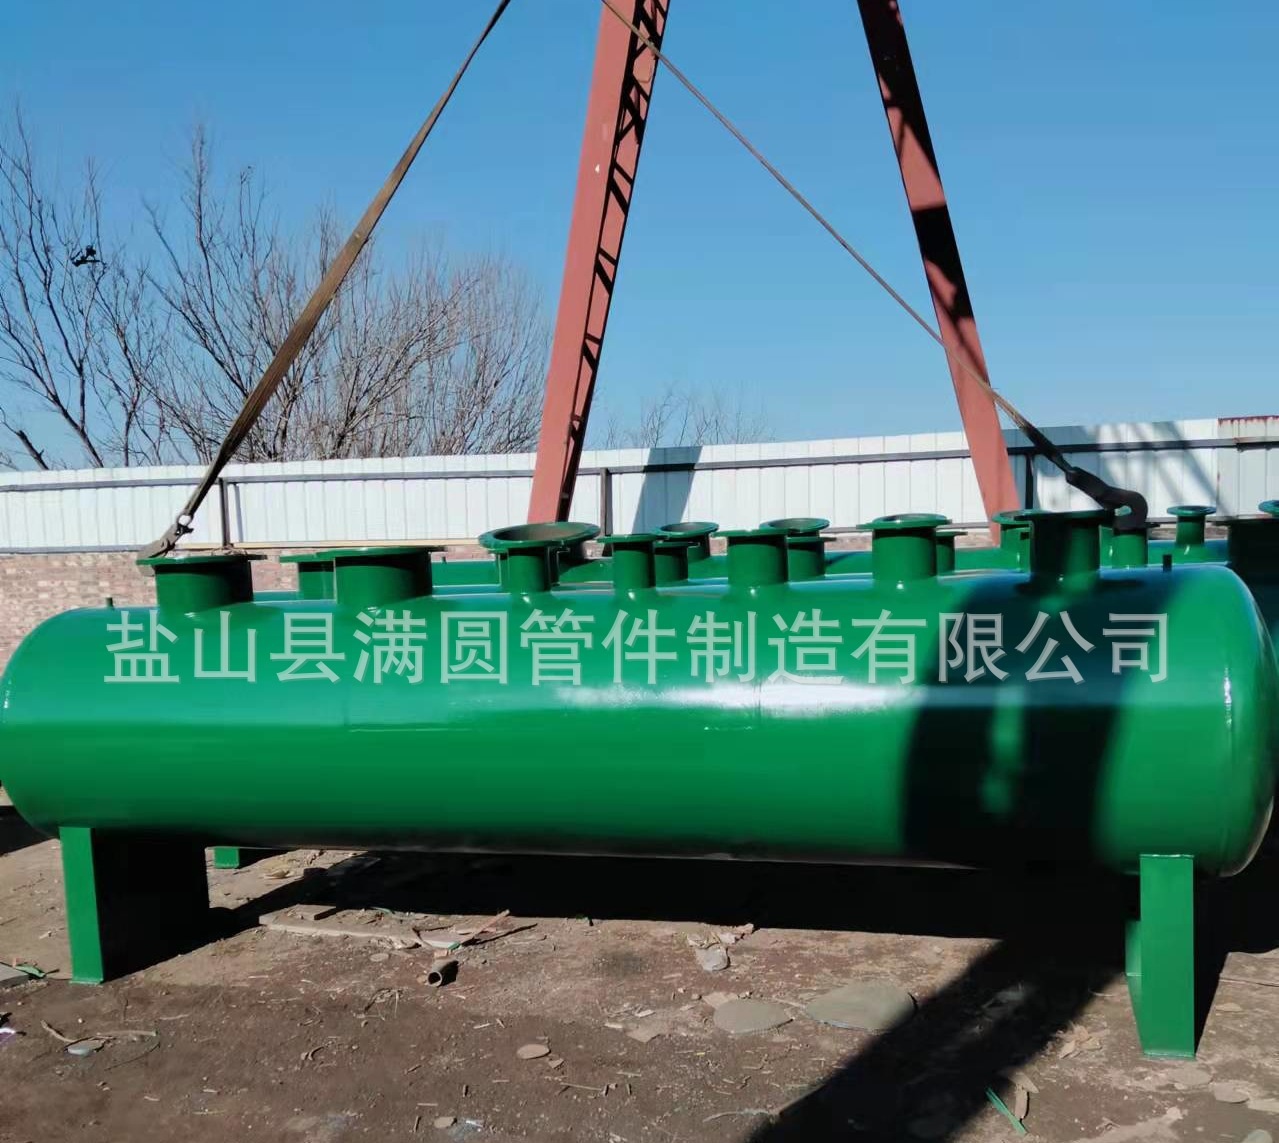 集水器  分水器 空调机组集分水器 北京集水器 天津集水器